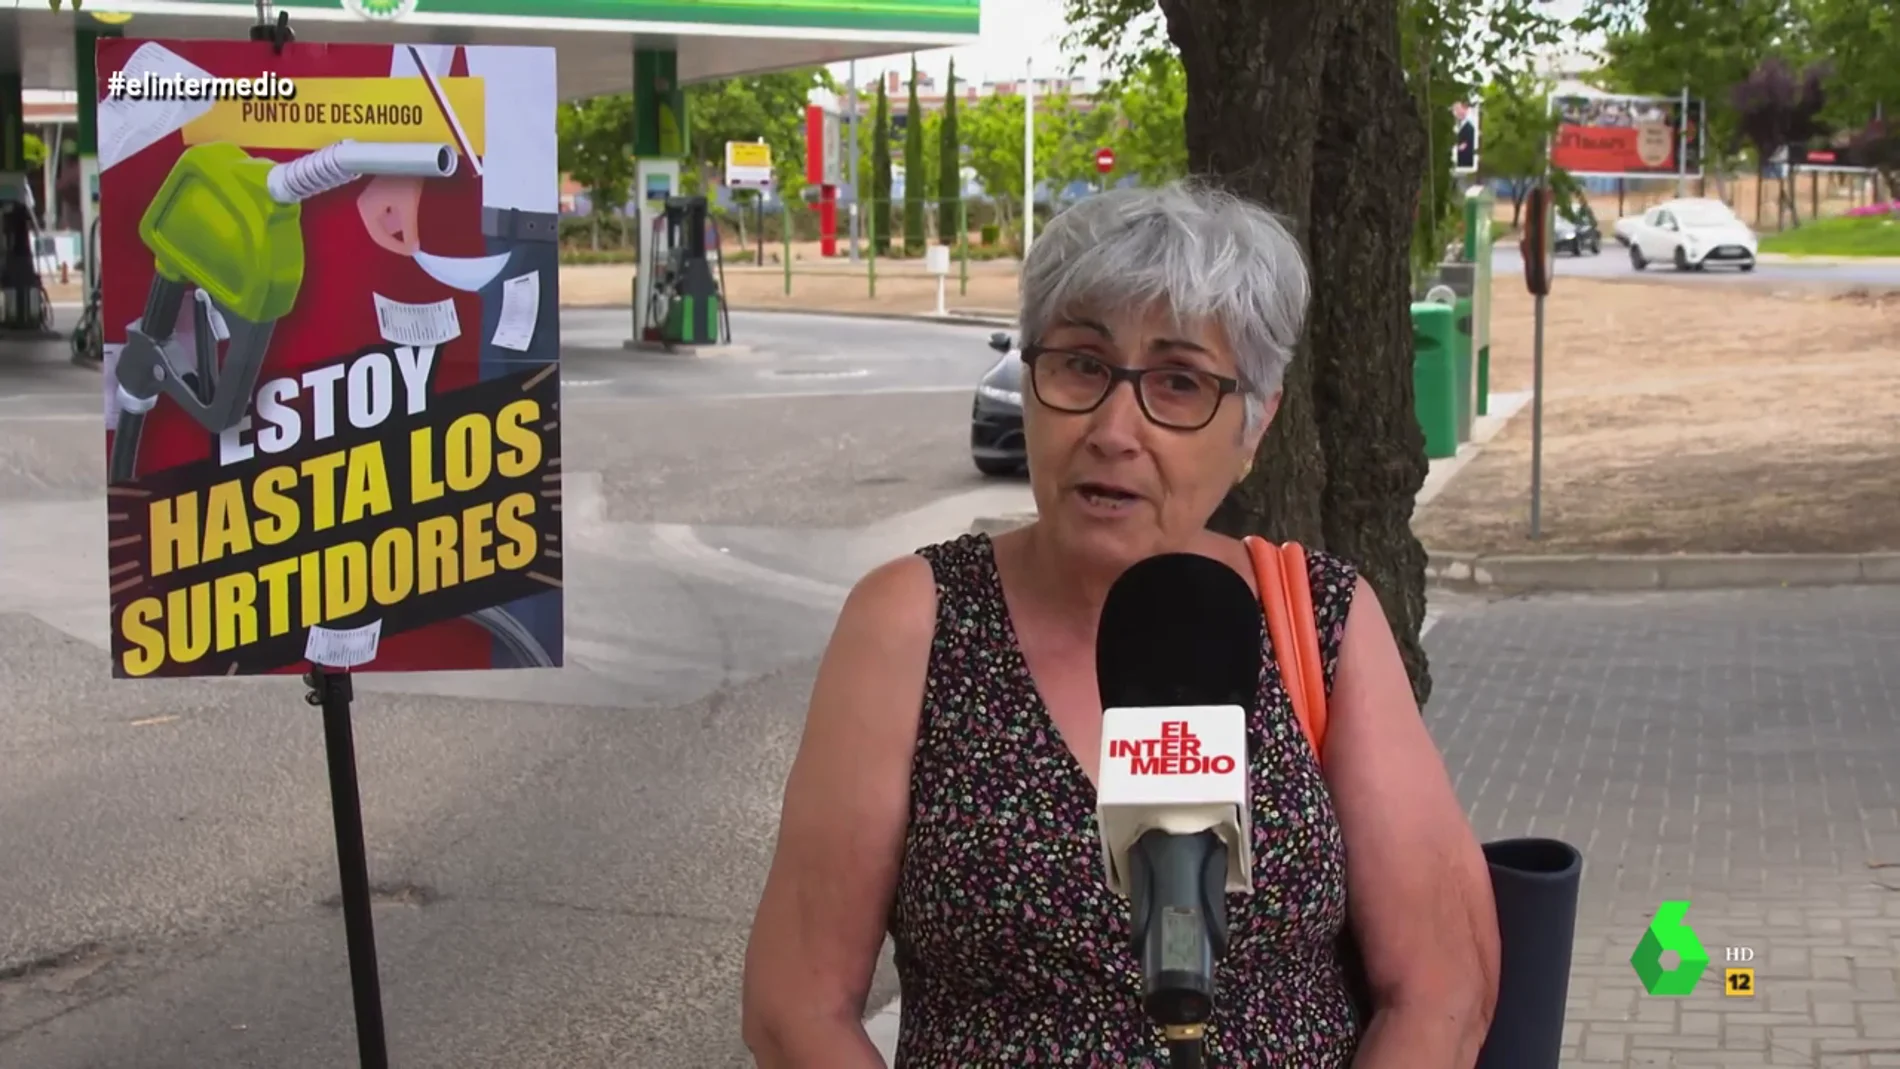 La indignación de una señora contra la subida del precio de la gasolina: "Estoy hasta los surtidores y muchas cosas más"